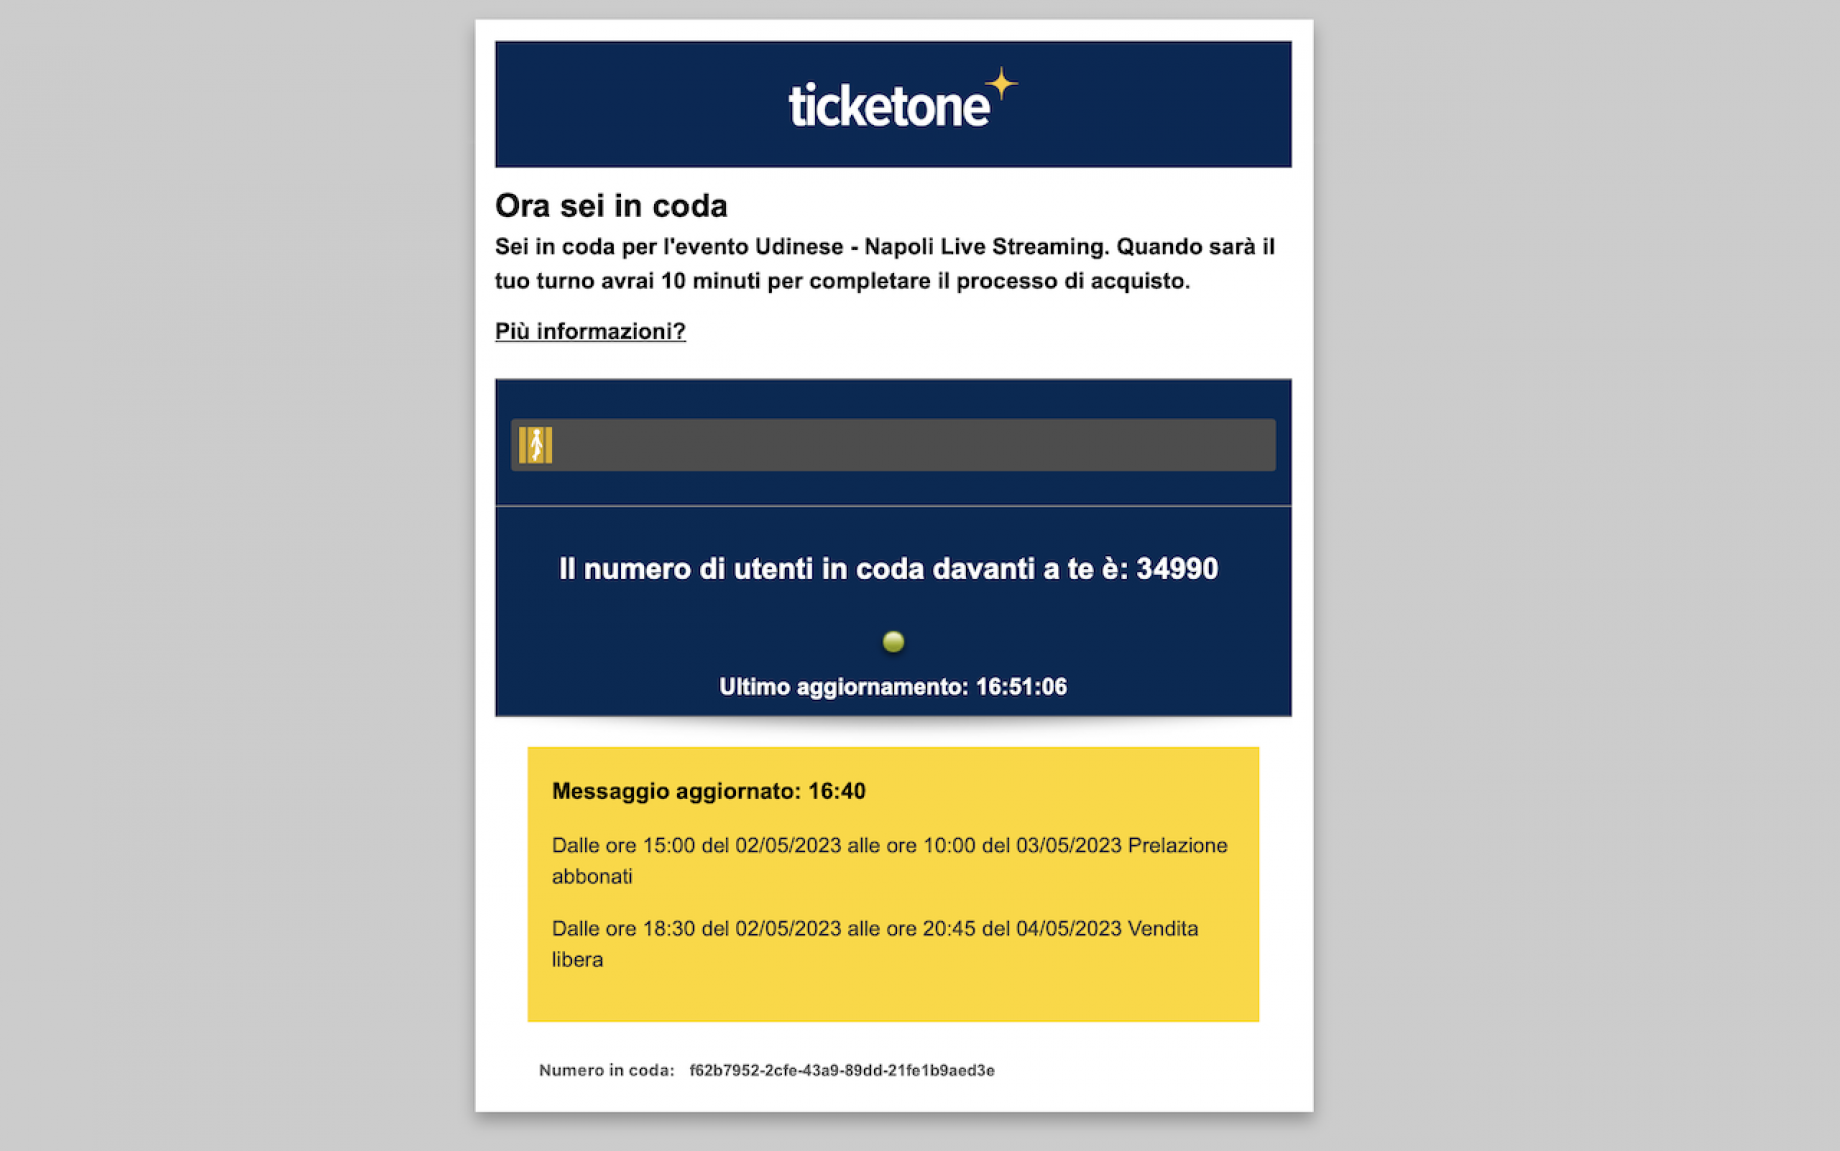 coda-online-biglietti-udinese-napoli-screen-gpo.png